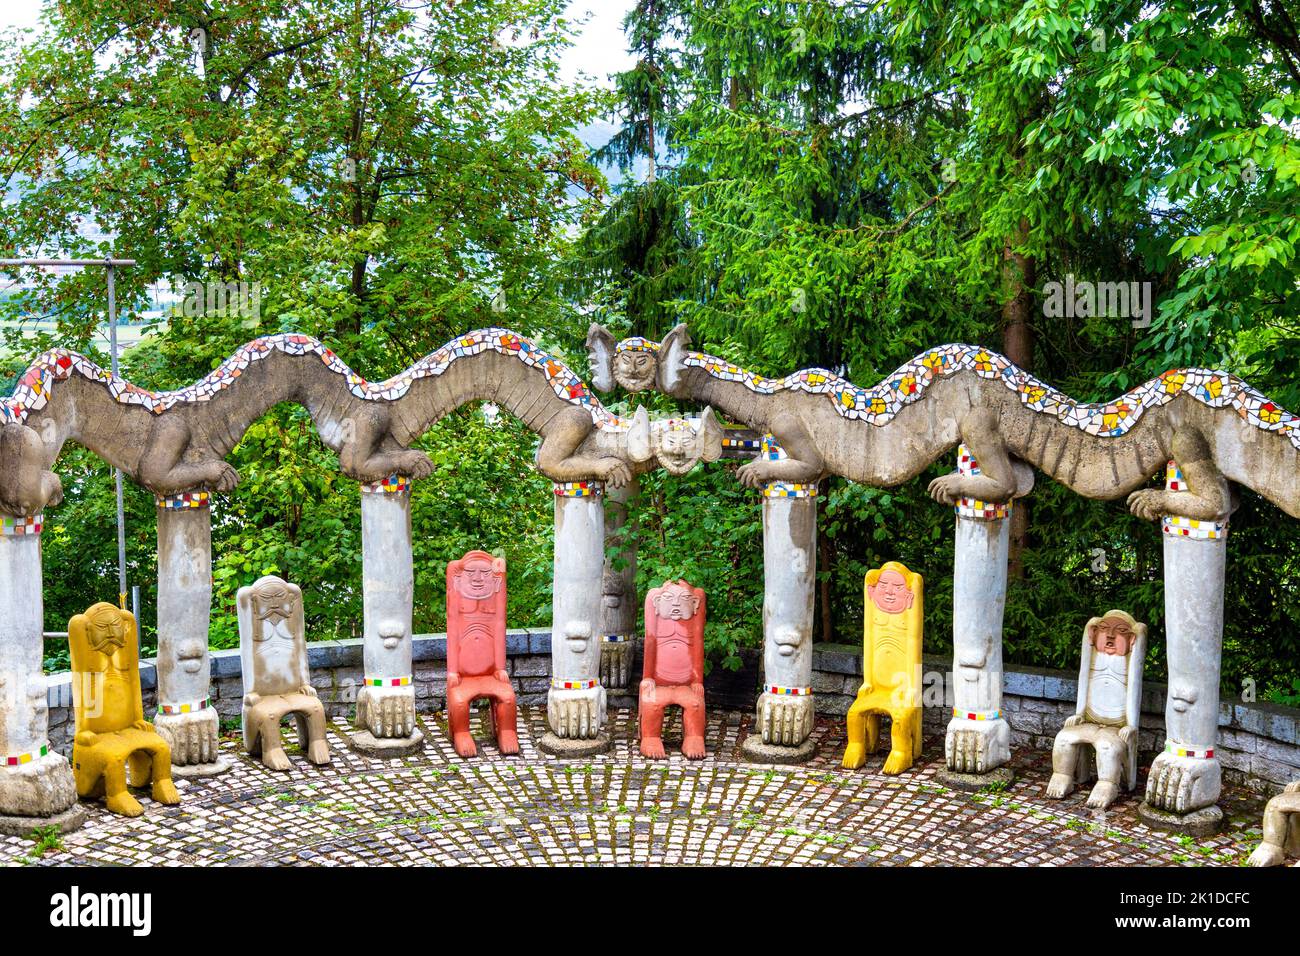 Créatures et chaises de fantaisie en béton en forme d'hommes au parc Bruno Weber, Dietikon, Suisse Banque D'Images